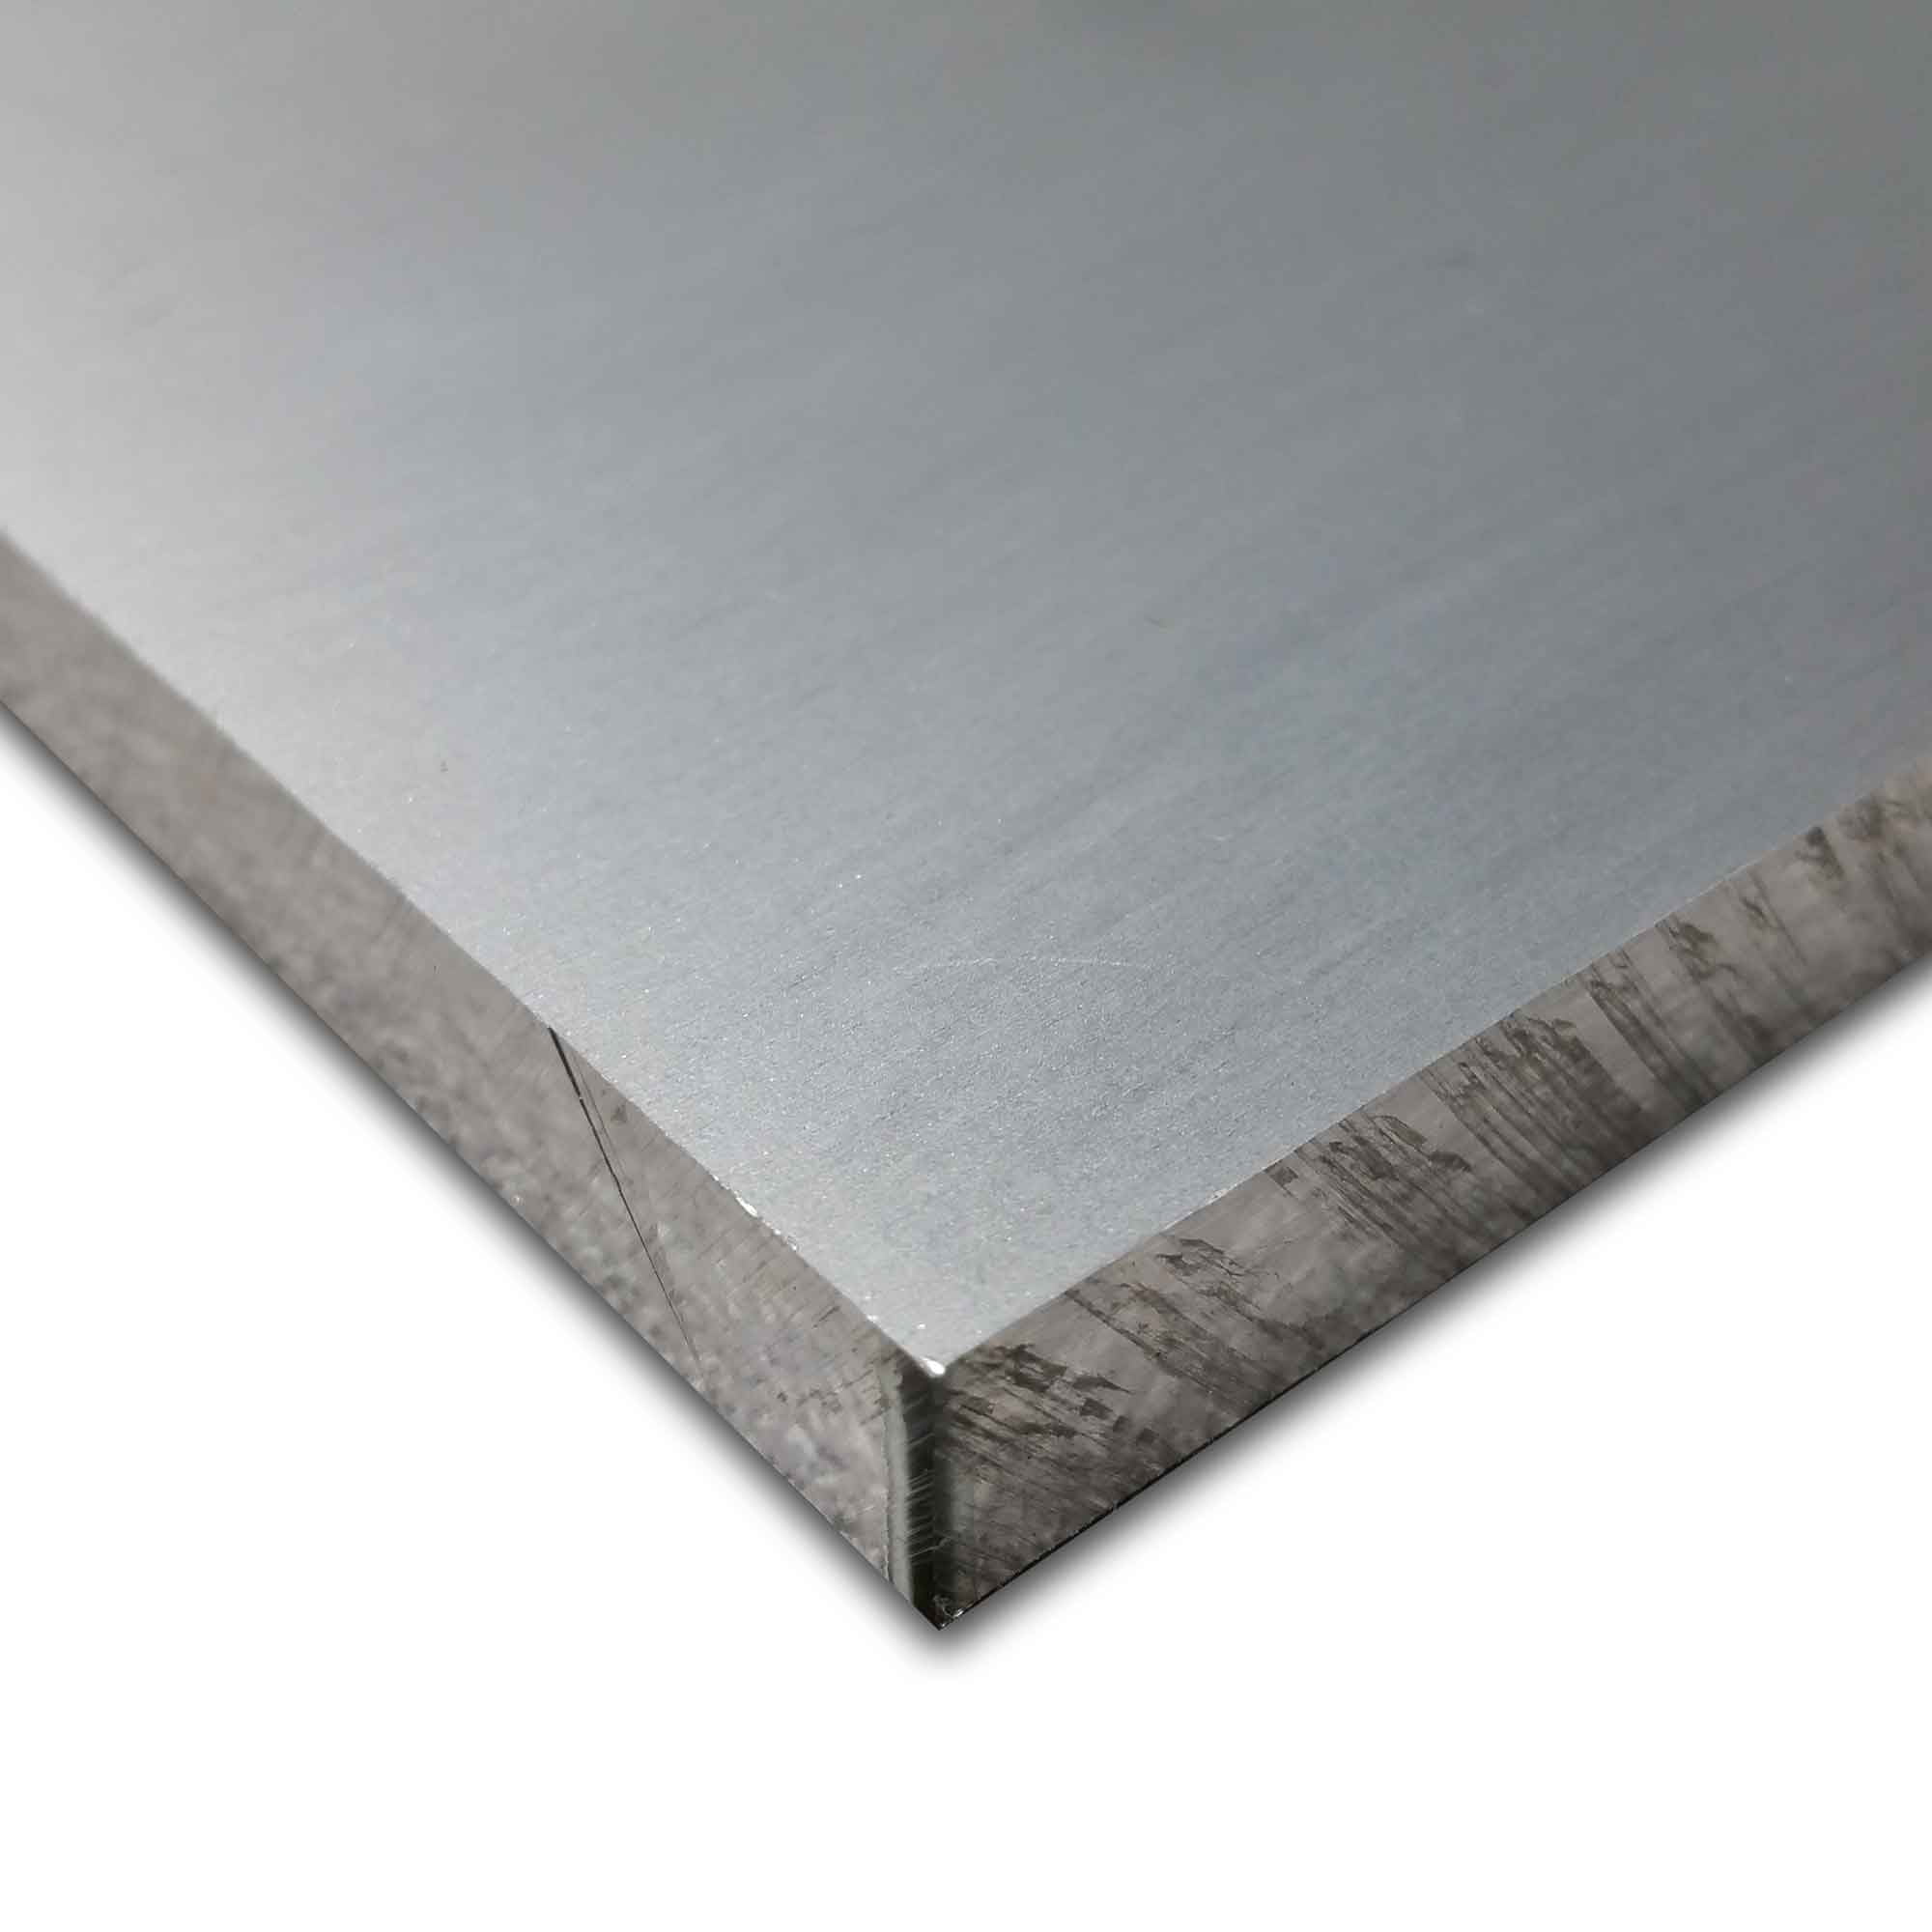 T6511 Mill Stock 6061 Plate 0.625 36" Length 5/8" x 1-1/2" Aluminum Flat Bar 